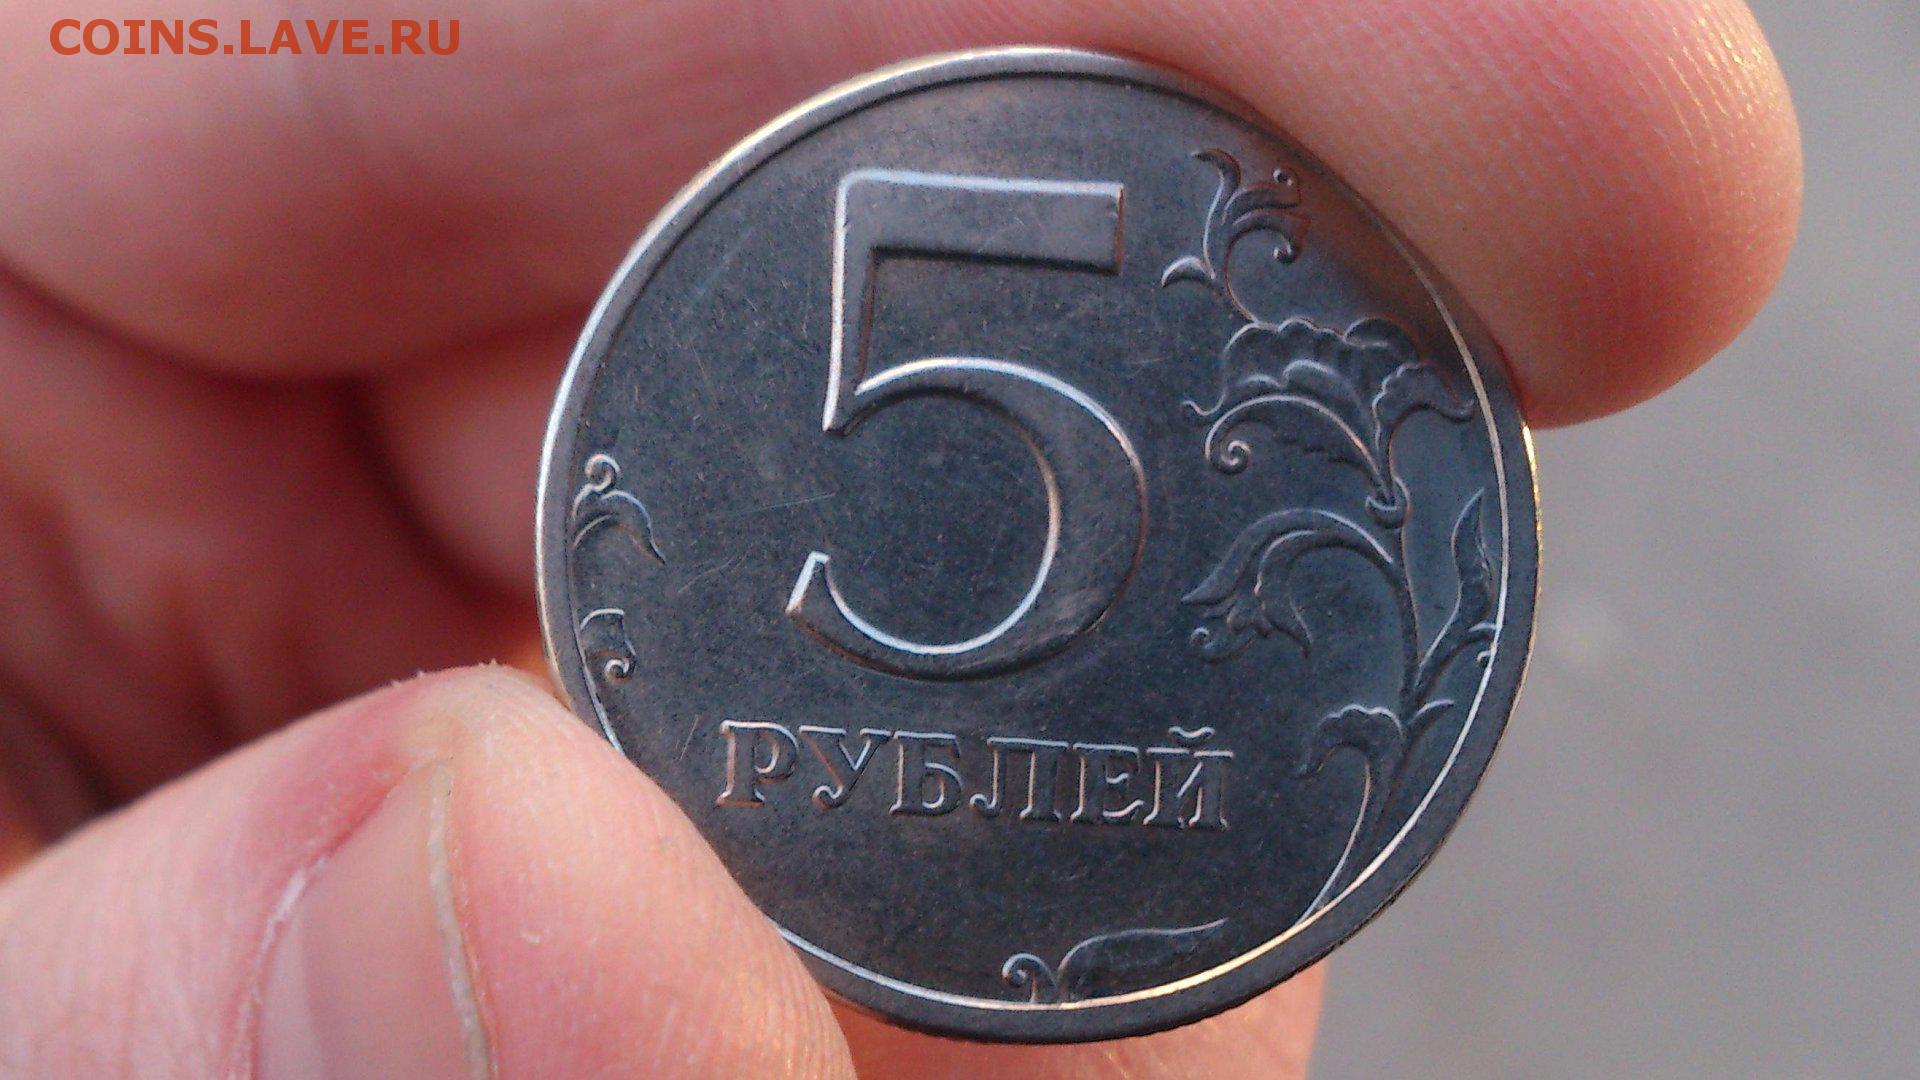 5 49 в рублях. Монеты. Монеты рубли. Монета 5 рублей в руке. Монетка 5 рублей.